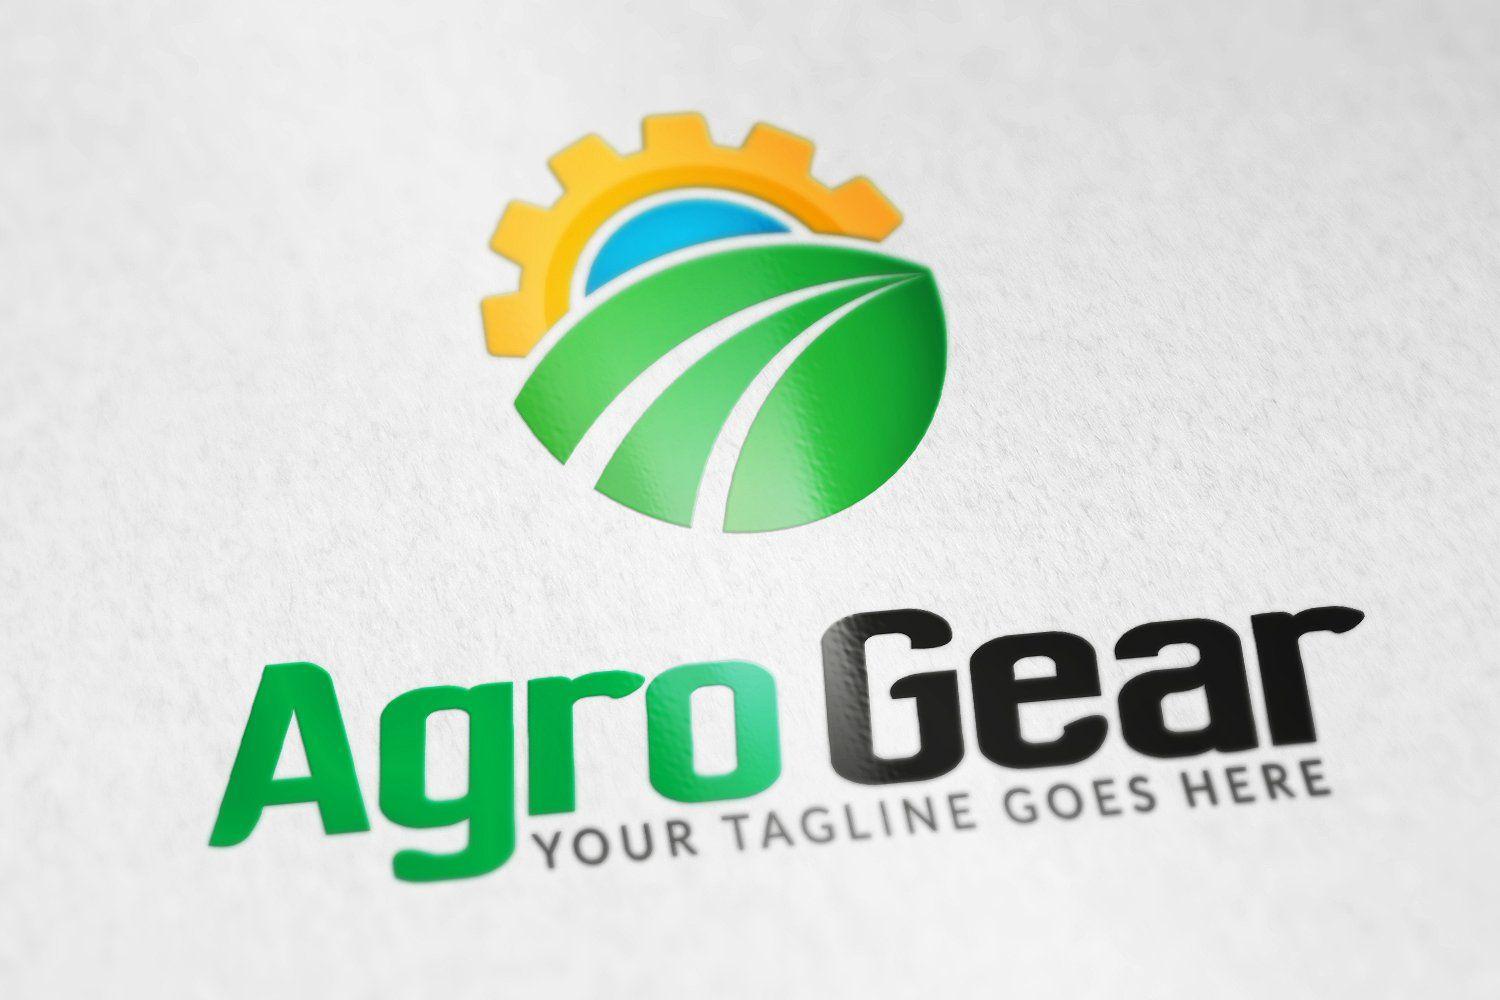 Agro Logo - Agro Gear logo Logo Templates Creative Market